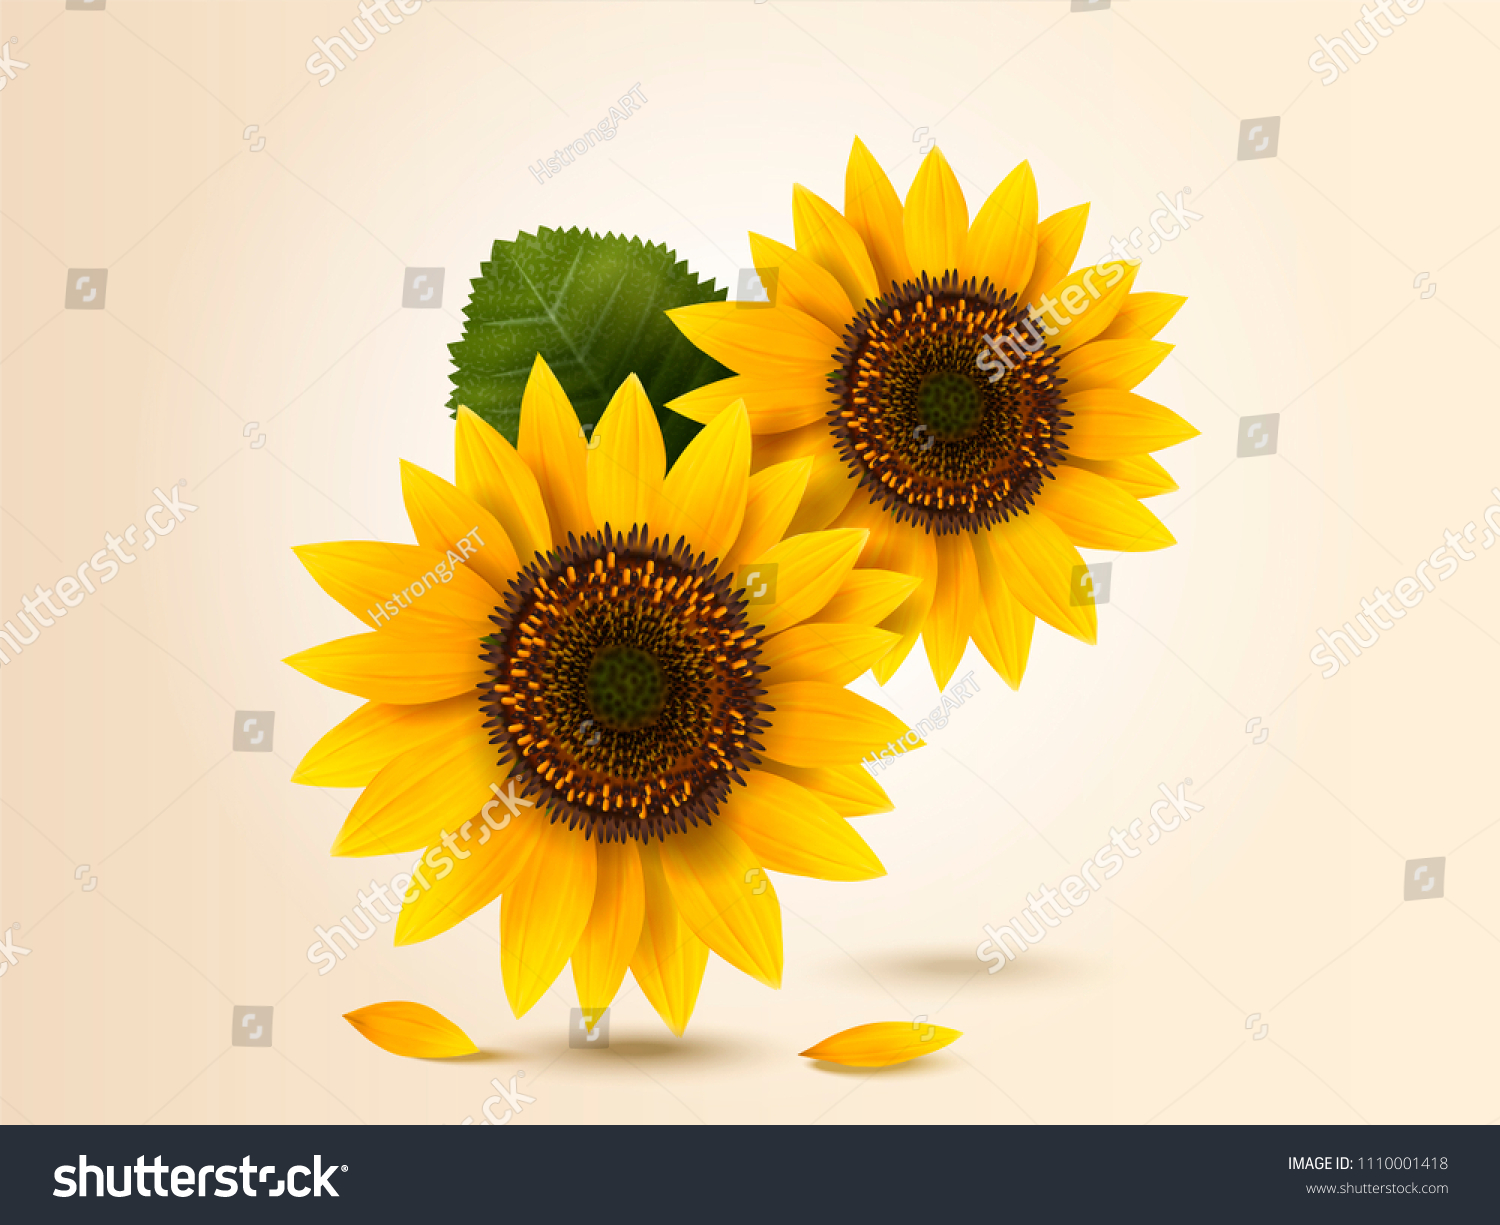 SVG of Exquisite sunflower design element in 3d illustration svg